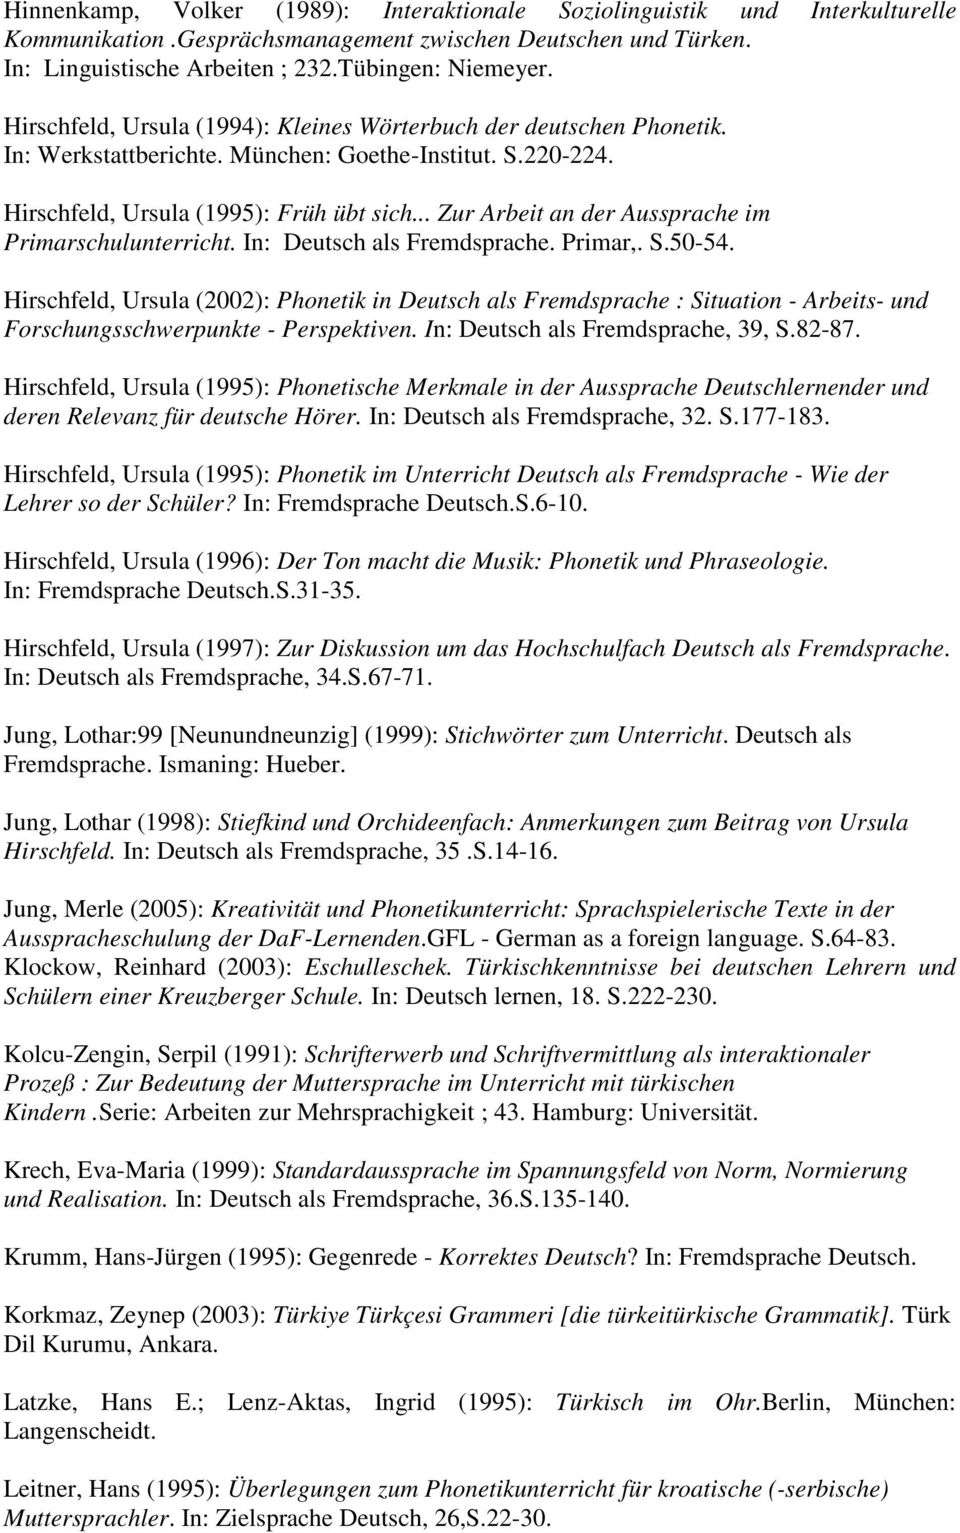 .. Zur Arbeit an der Aussprache im Primarschulunterricht. In: Deutsch als Fremdsprache. Primar,. S.50-54.